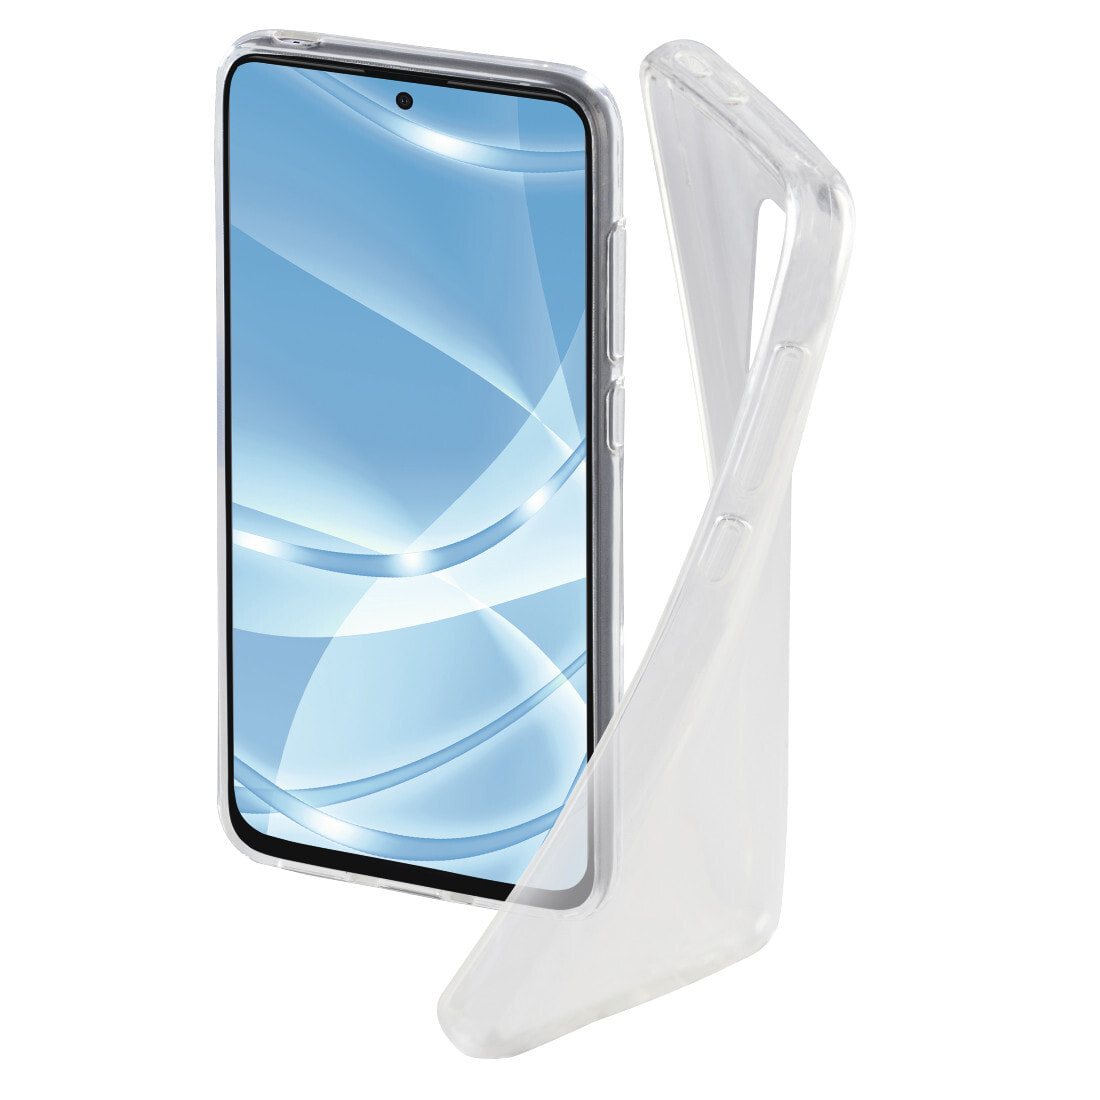 Hama Crystal Clear чехол для мобильного телефона 16,9 cm (6.67